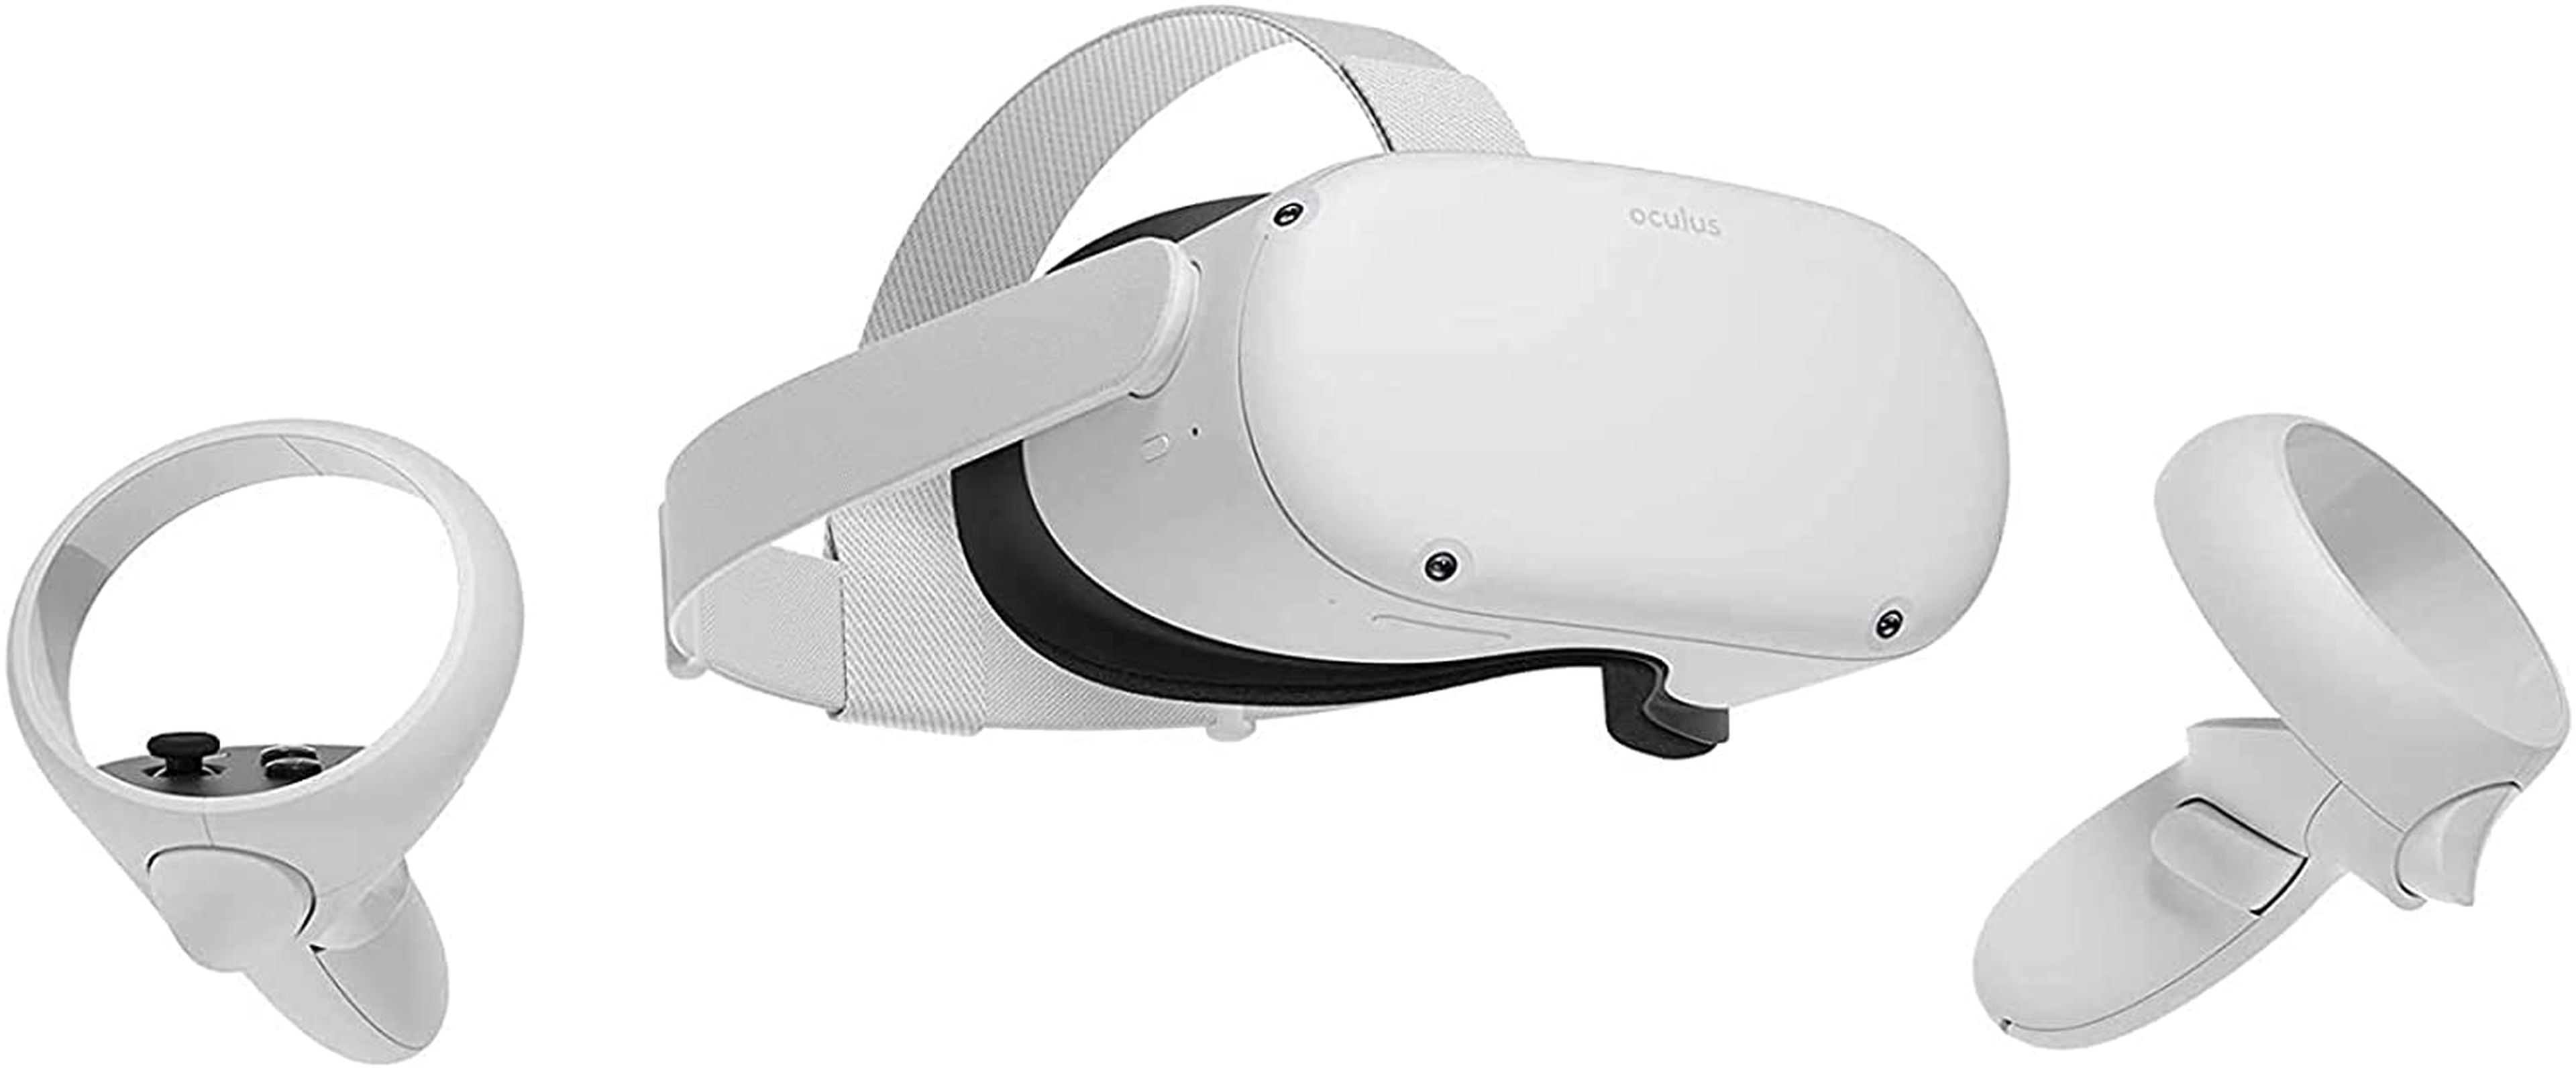 Las gafas de realidad virtual Oculus Quest.